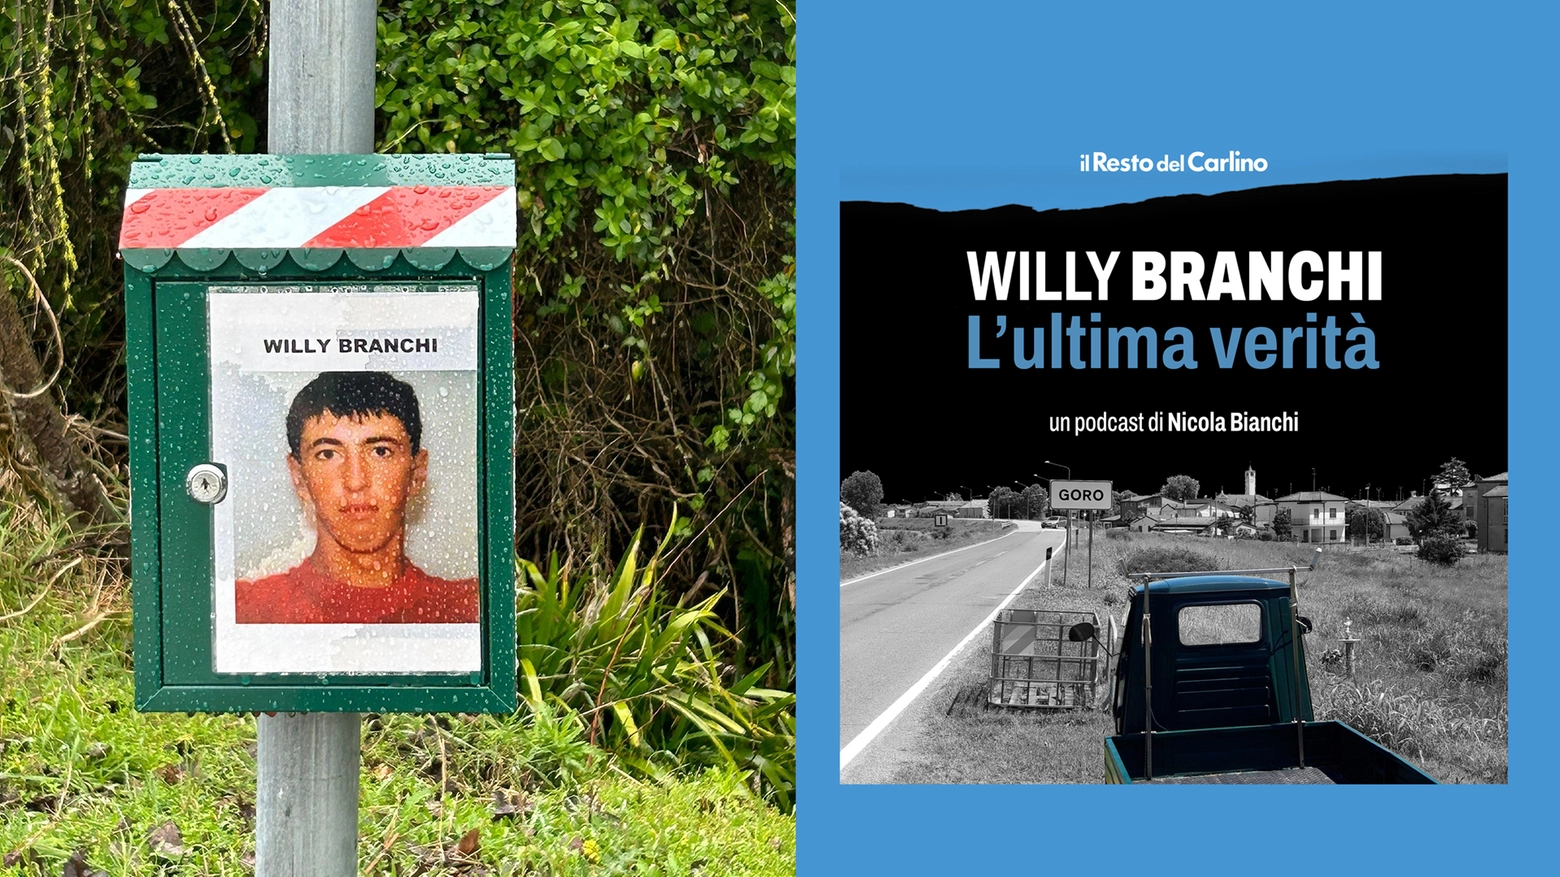 A sinistra una delle cassette postali messe dal fratello di Willy per raccogliere segnalazioni; a destra la cover del podcast di Nicola Bianchi che uscirà in 8 puntate ogni martedì